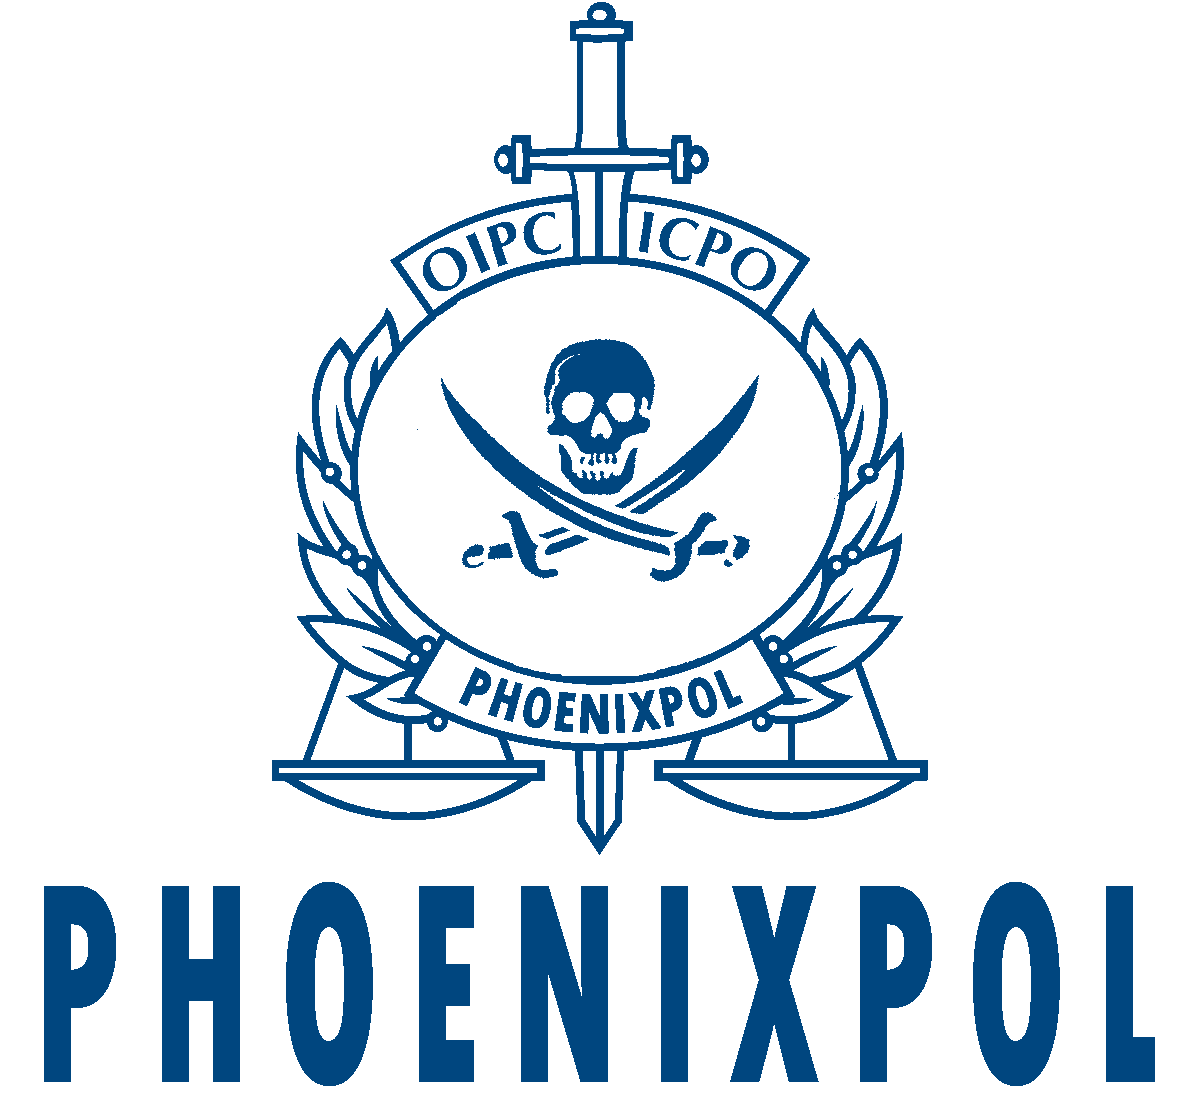 Phoenixpol